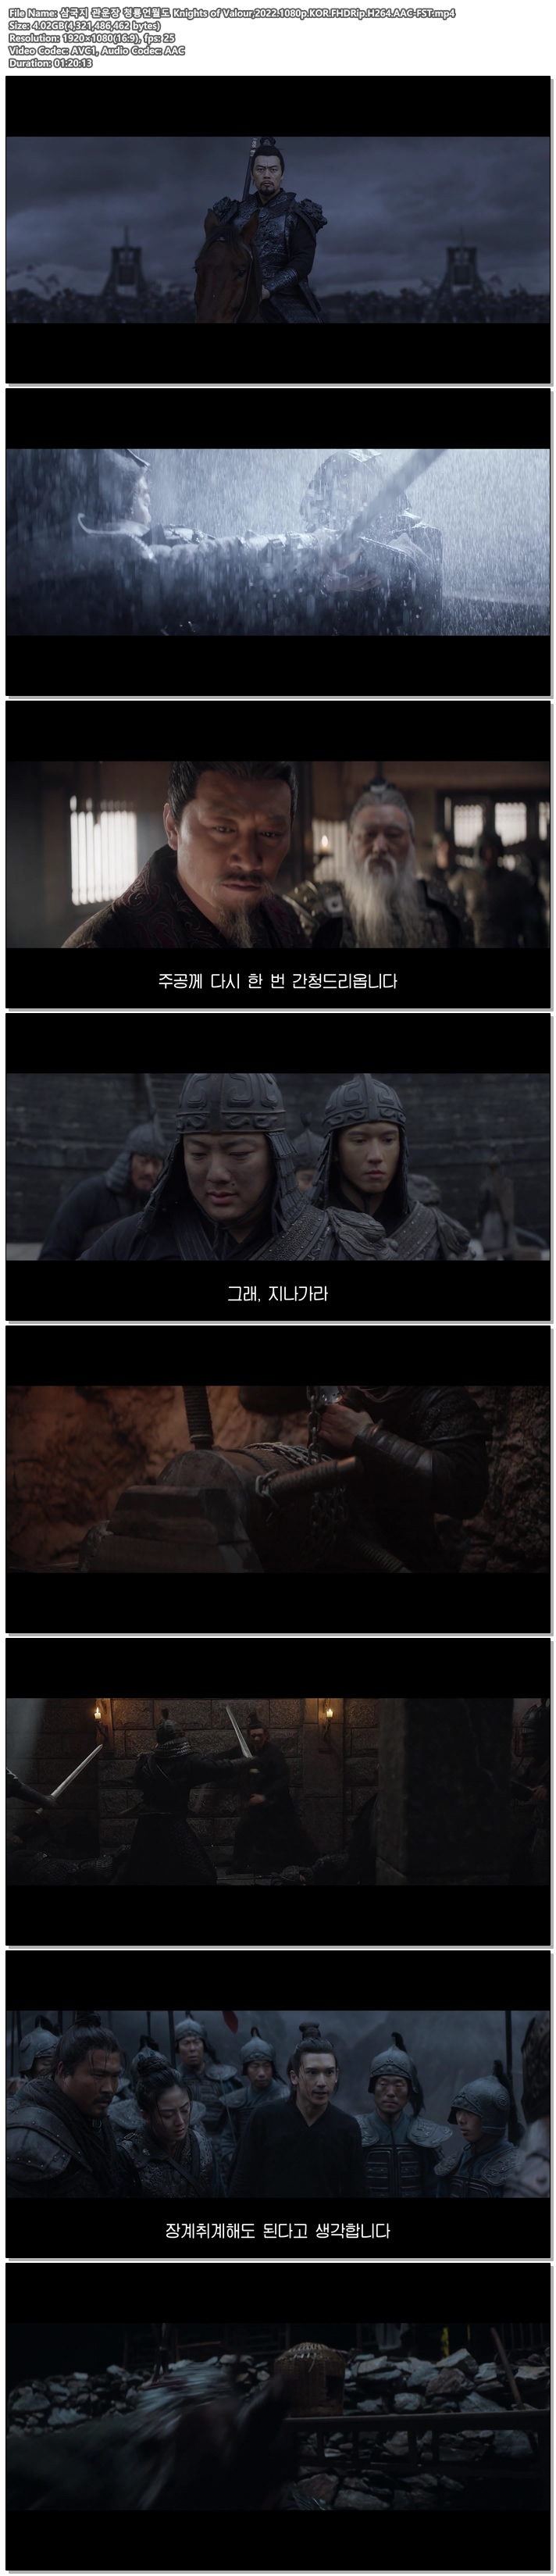 [영화] 삼국지 관운장 청룡언월도 Knights of Valour,2022 [1080p] [자체자막]